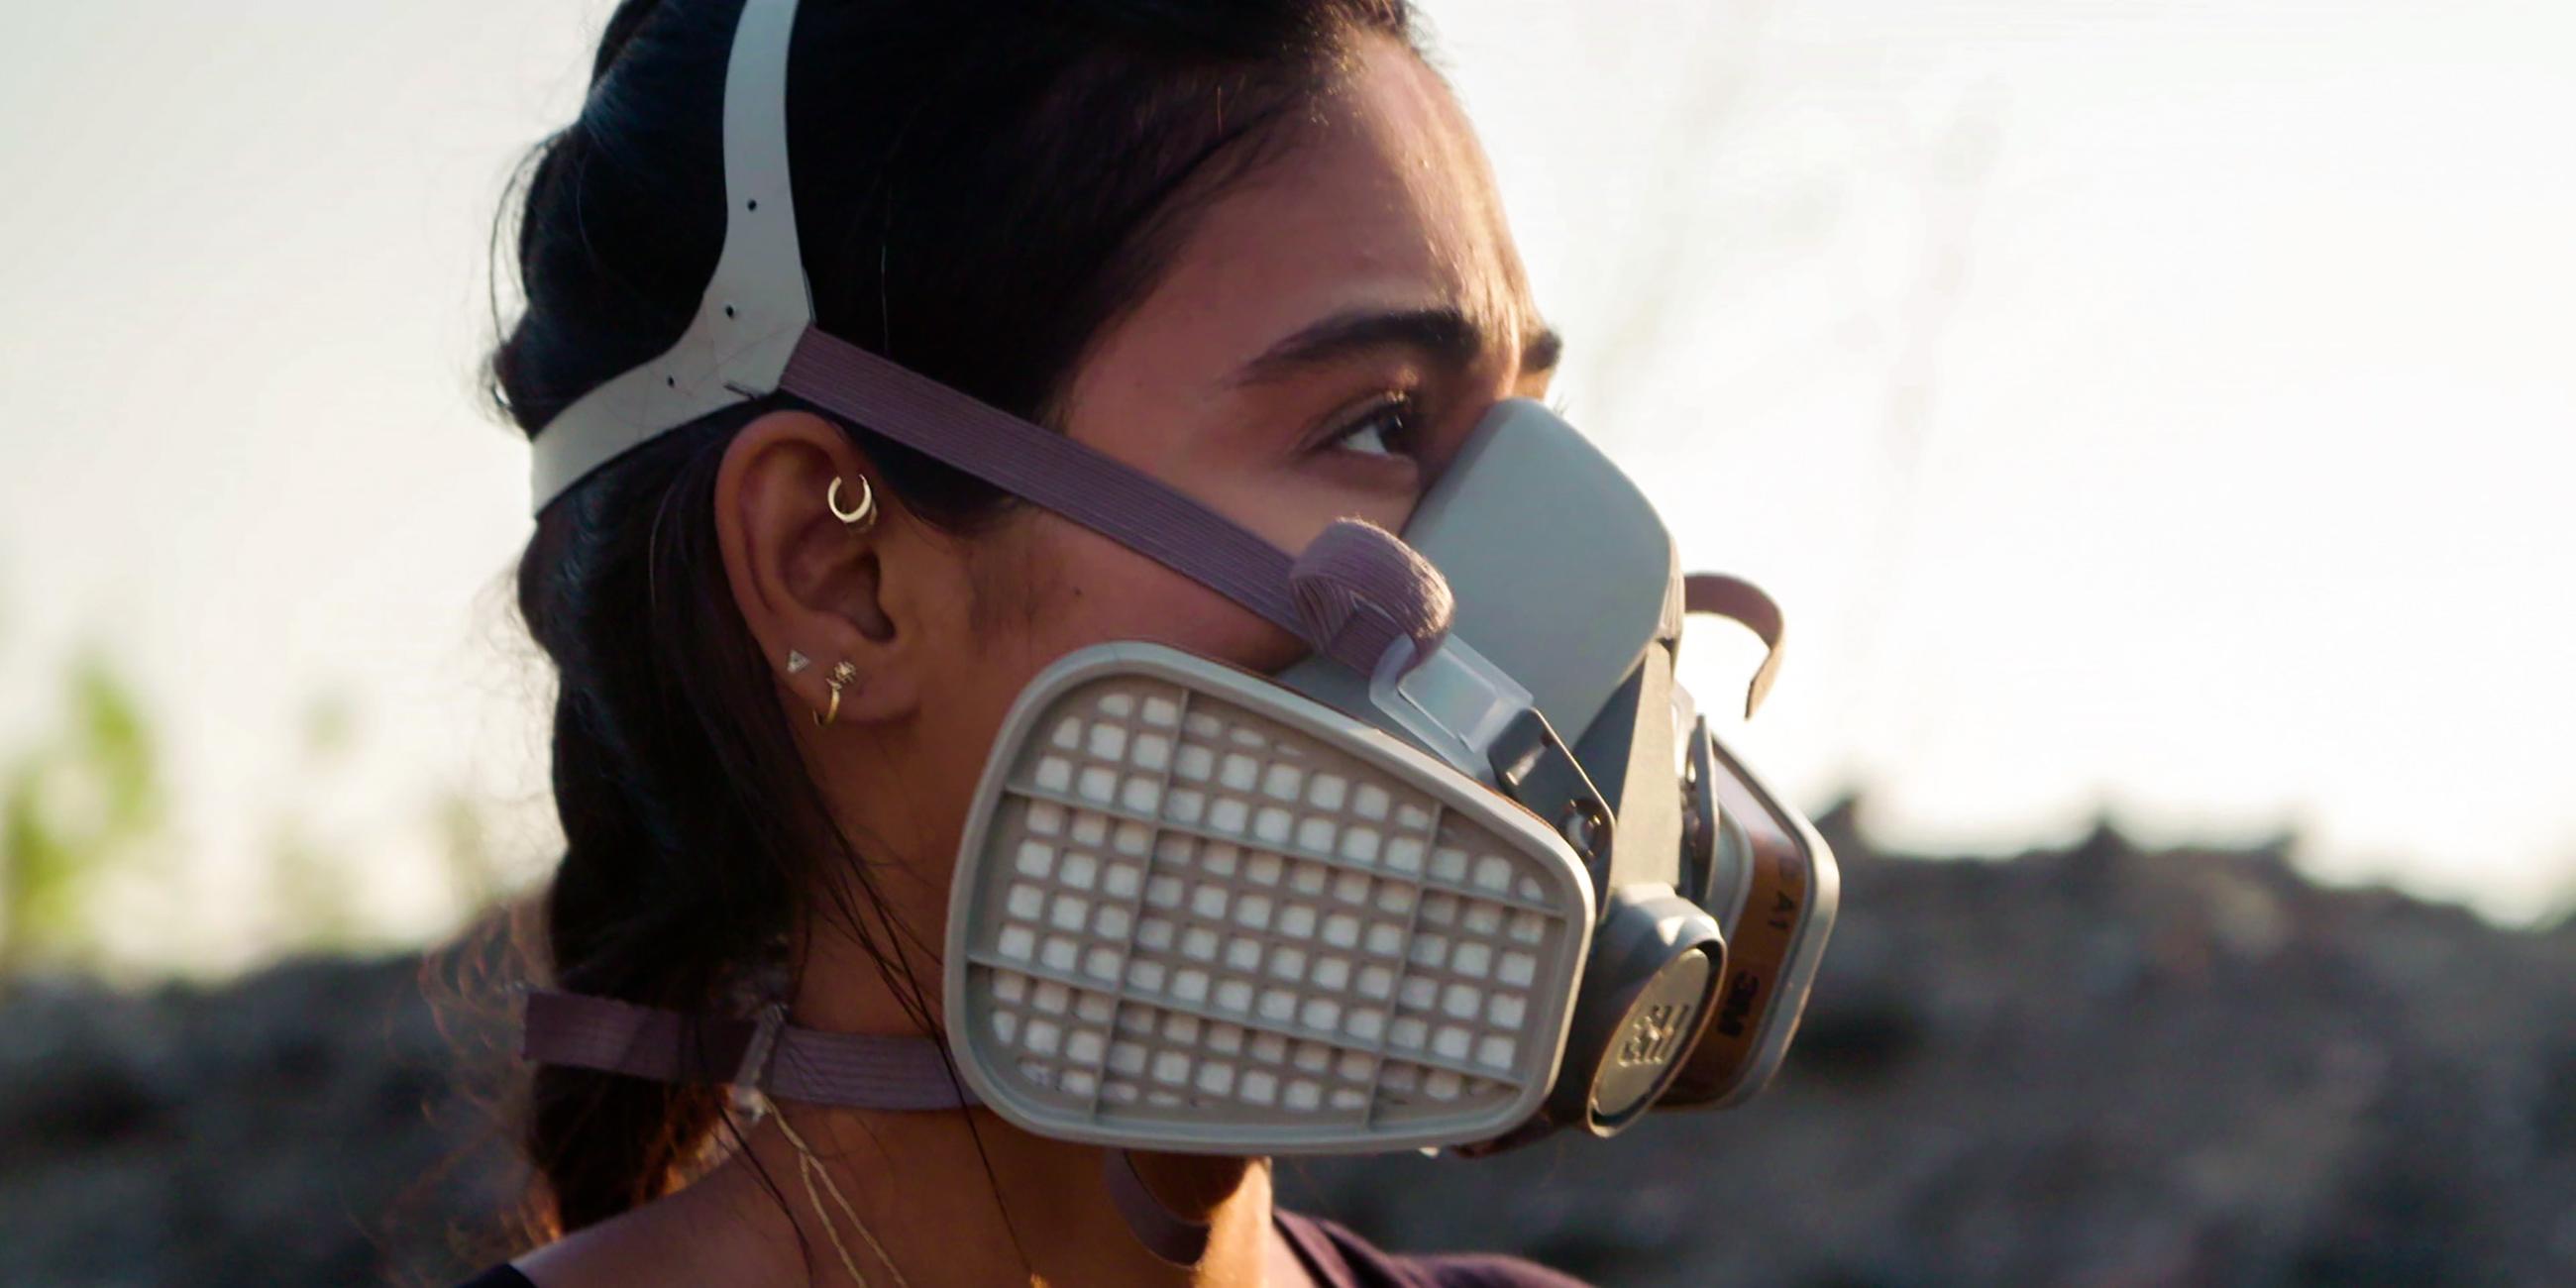 Porträtaufnahme der Journalistin Nelufar Hedayat: Sie hat die Haare zum Zopf gebunden trägt eine Atemschutzmaske und schaut zur Seite.